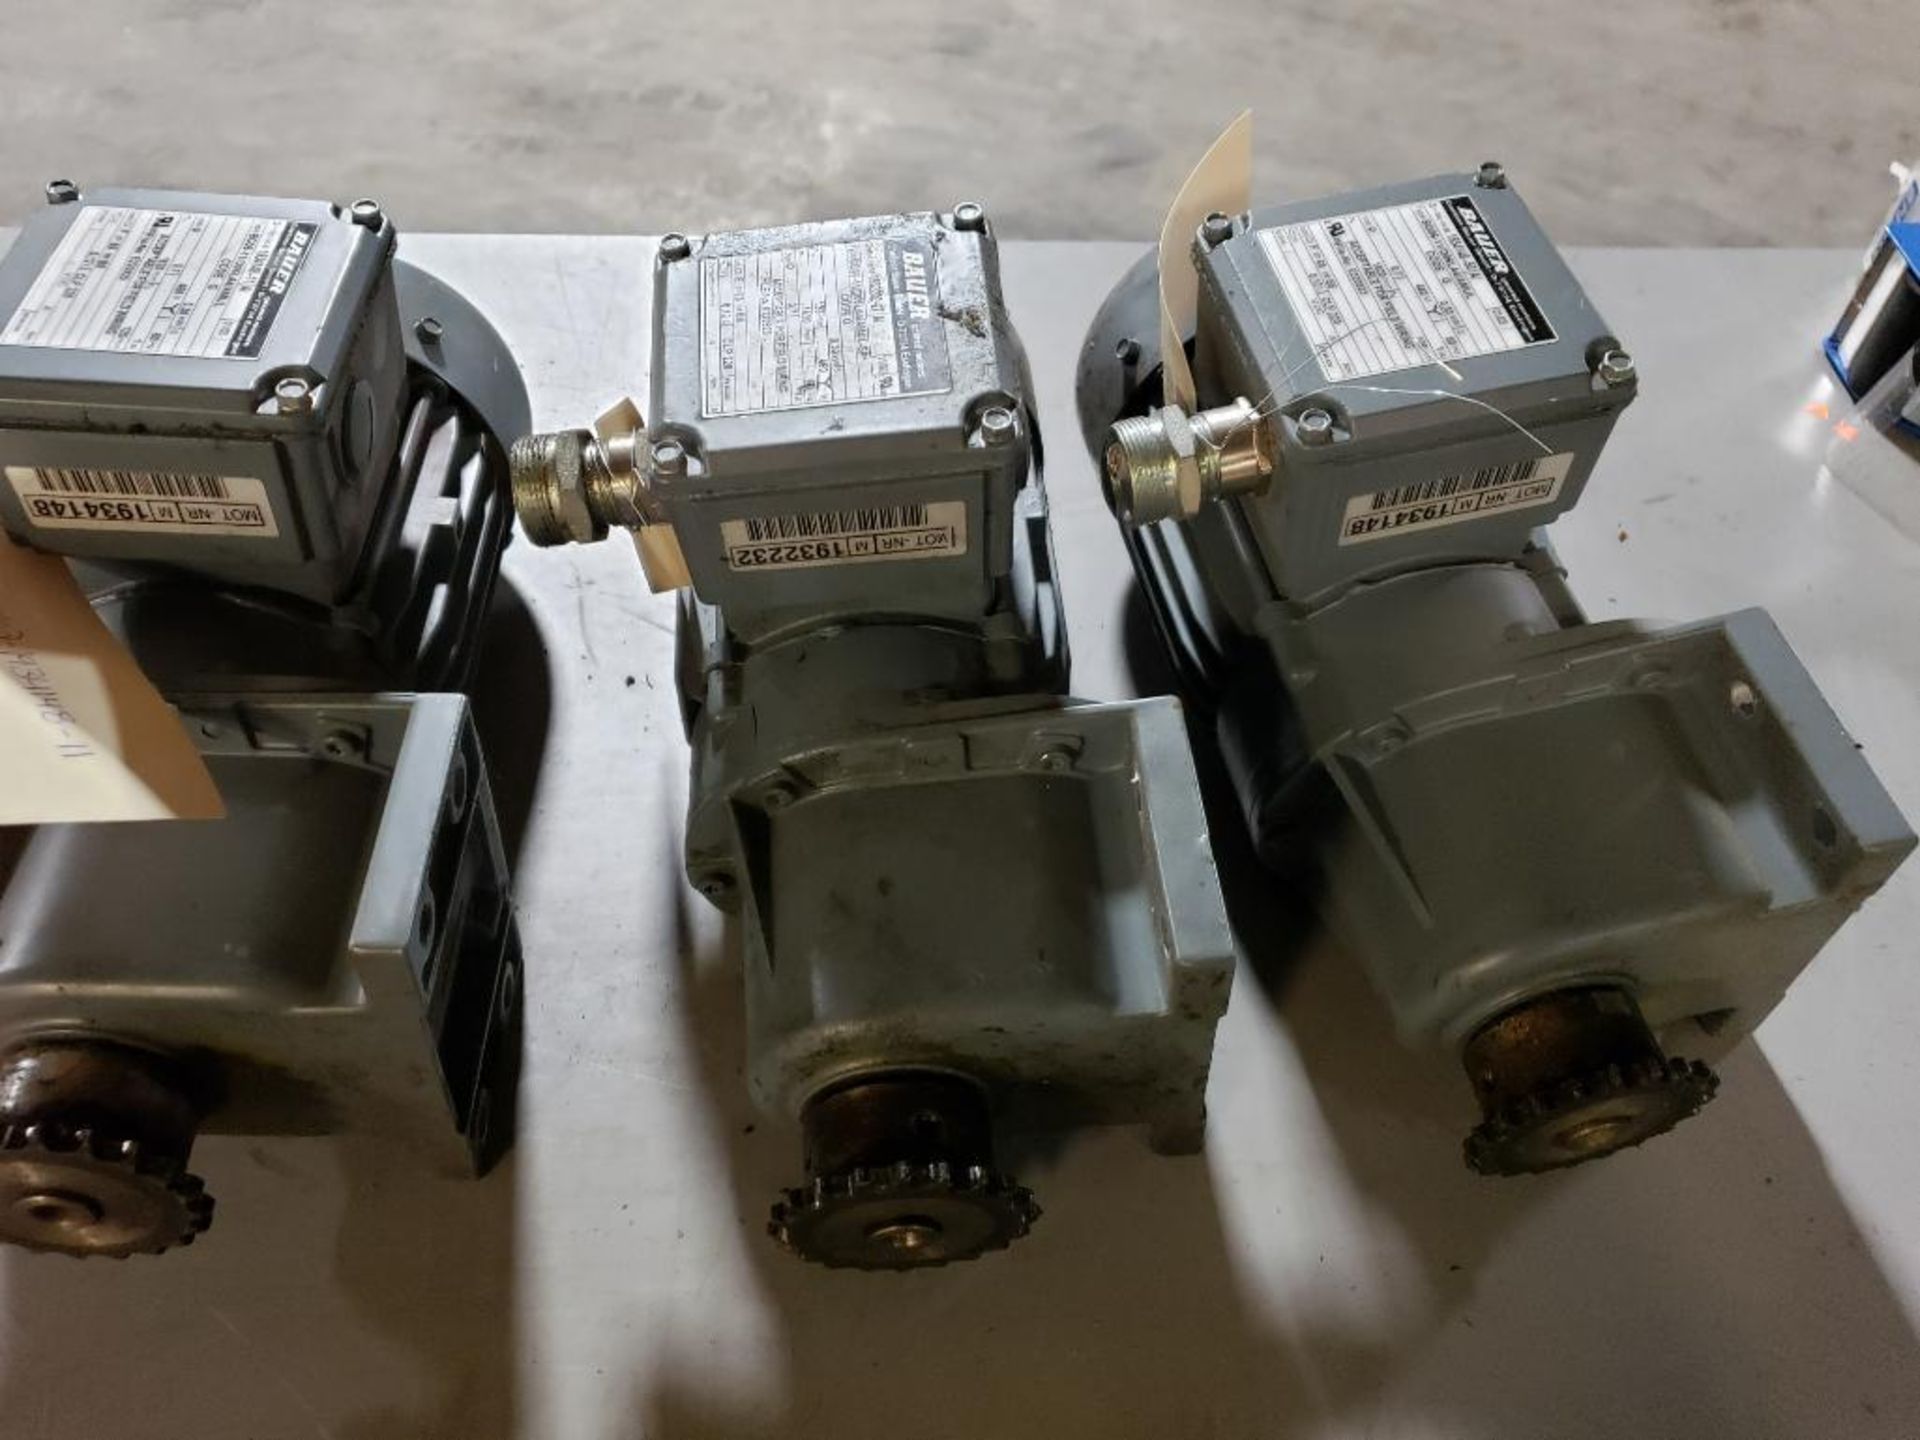 Qty 3 - Bauer gear motors. Type BG06-11/D06LA4/AMUL.